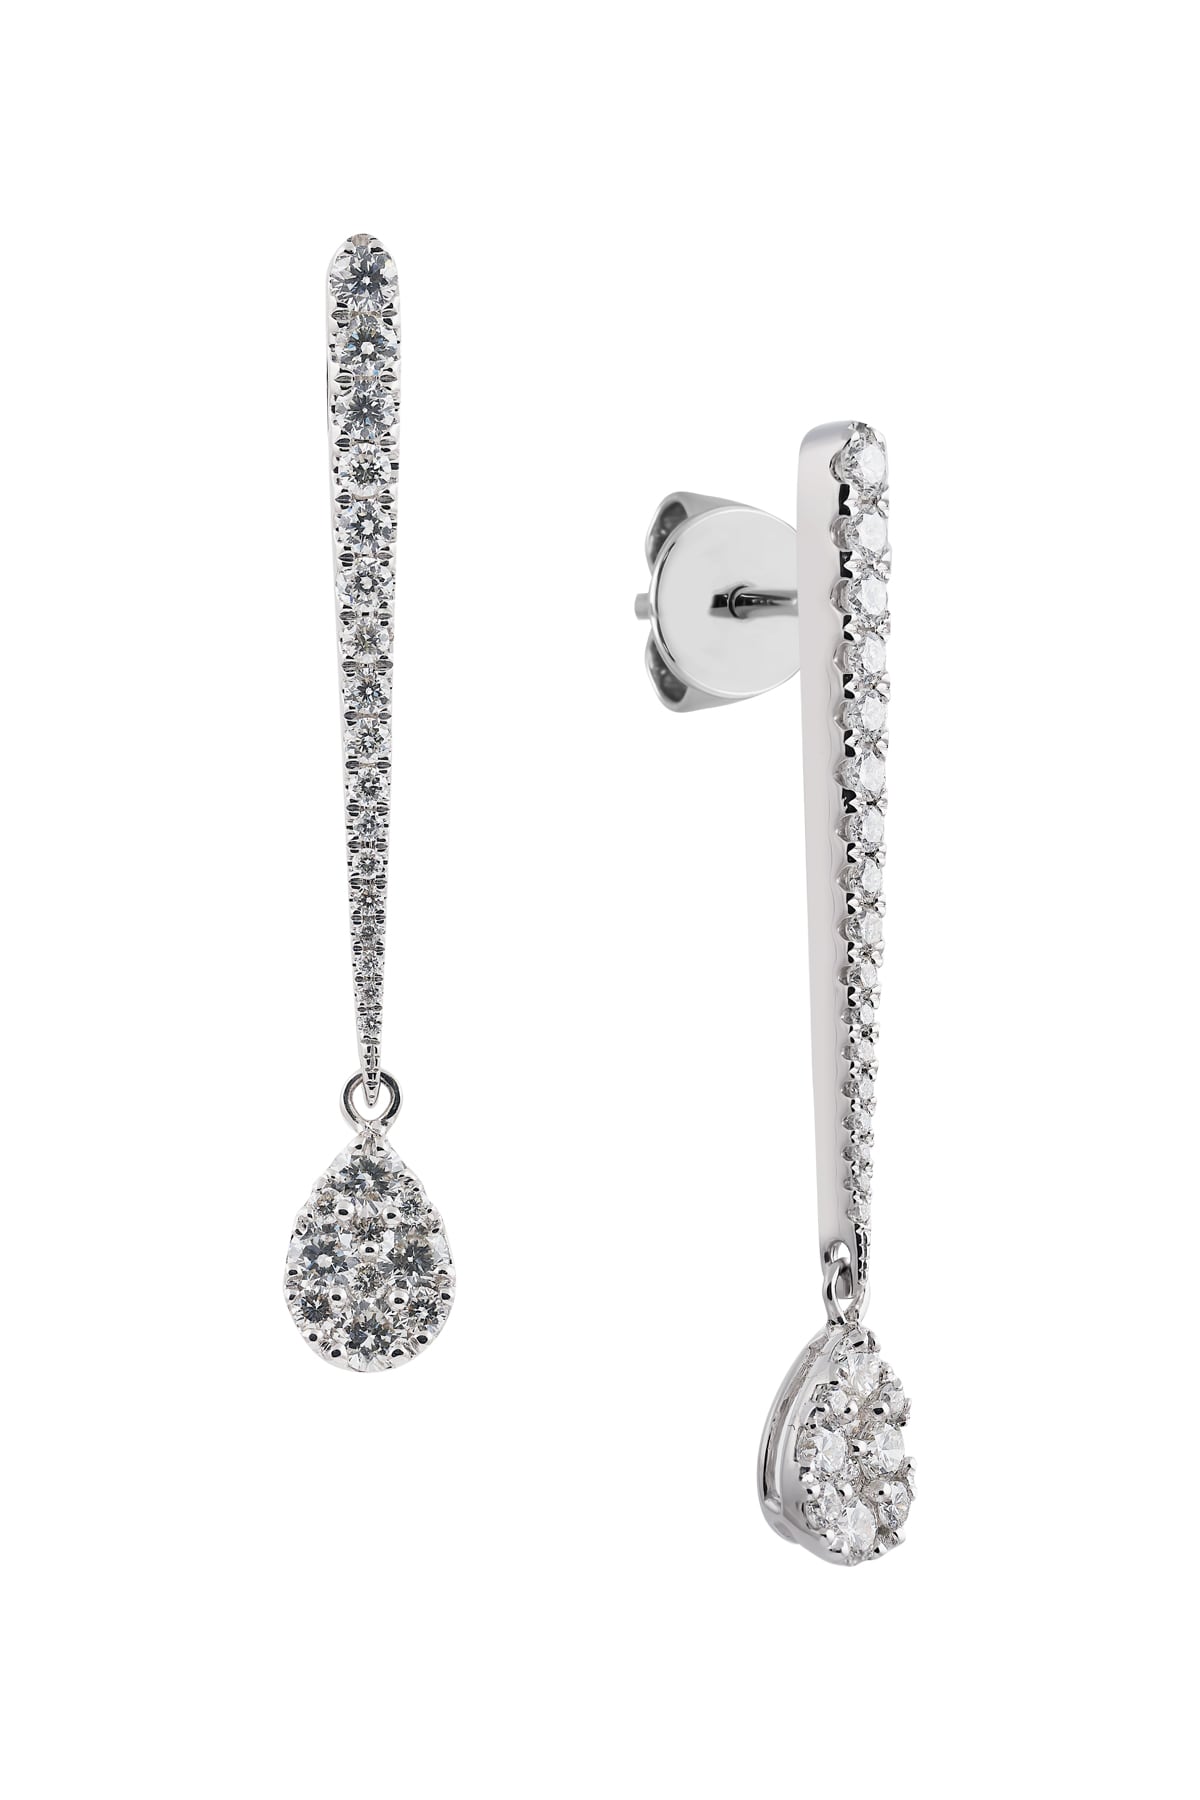 Pear Shaped Long Diamond Drop Earrings from LeGassick.